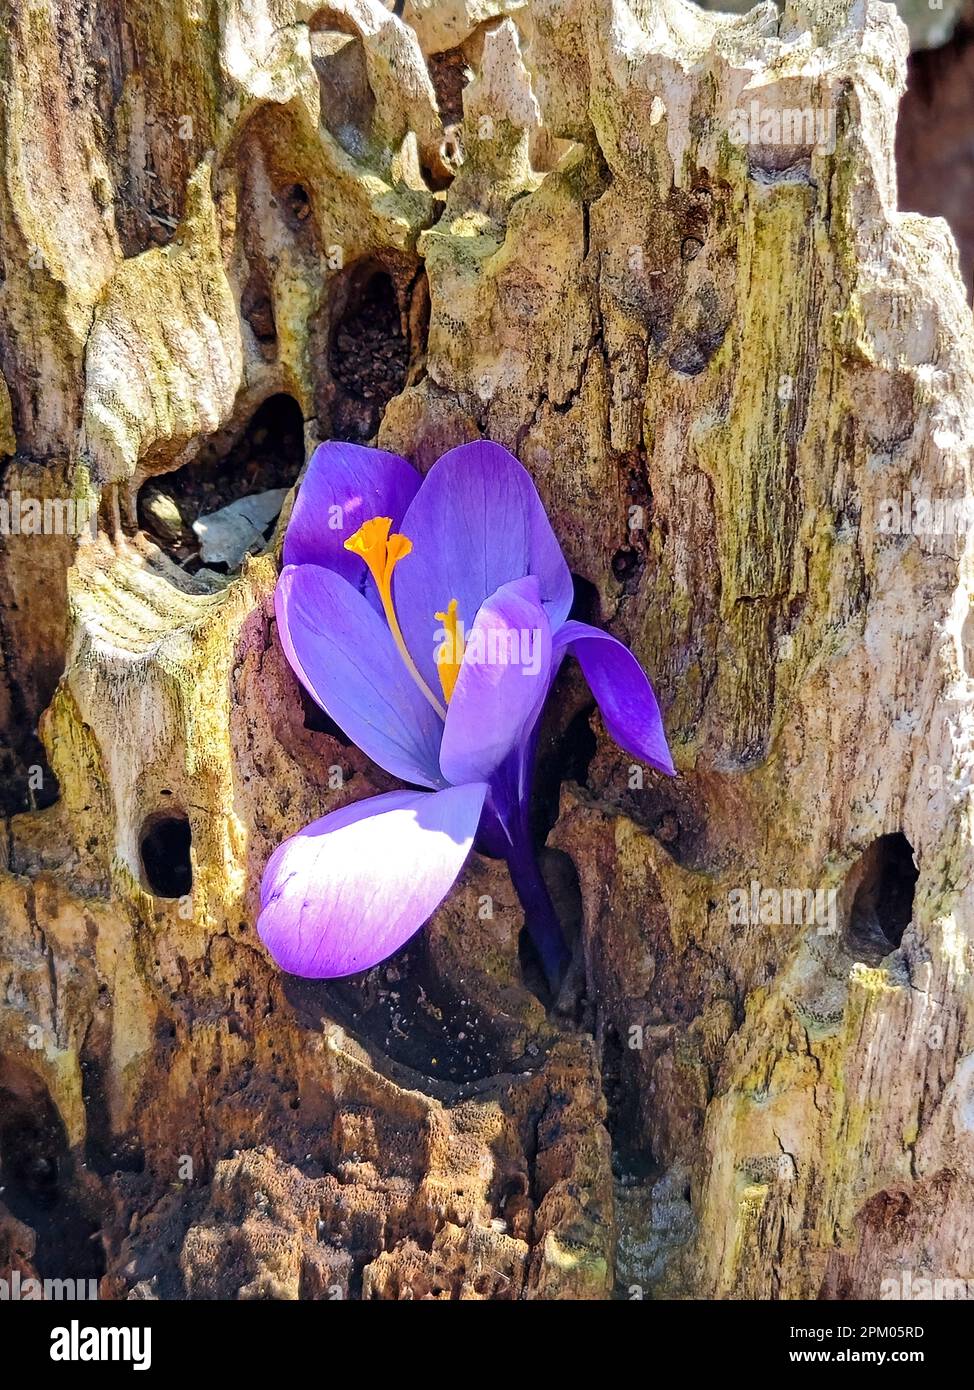 Primer plano de un crocus de primavera púrpura en un tronco de árbol rústico Foto de stock